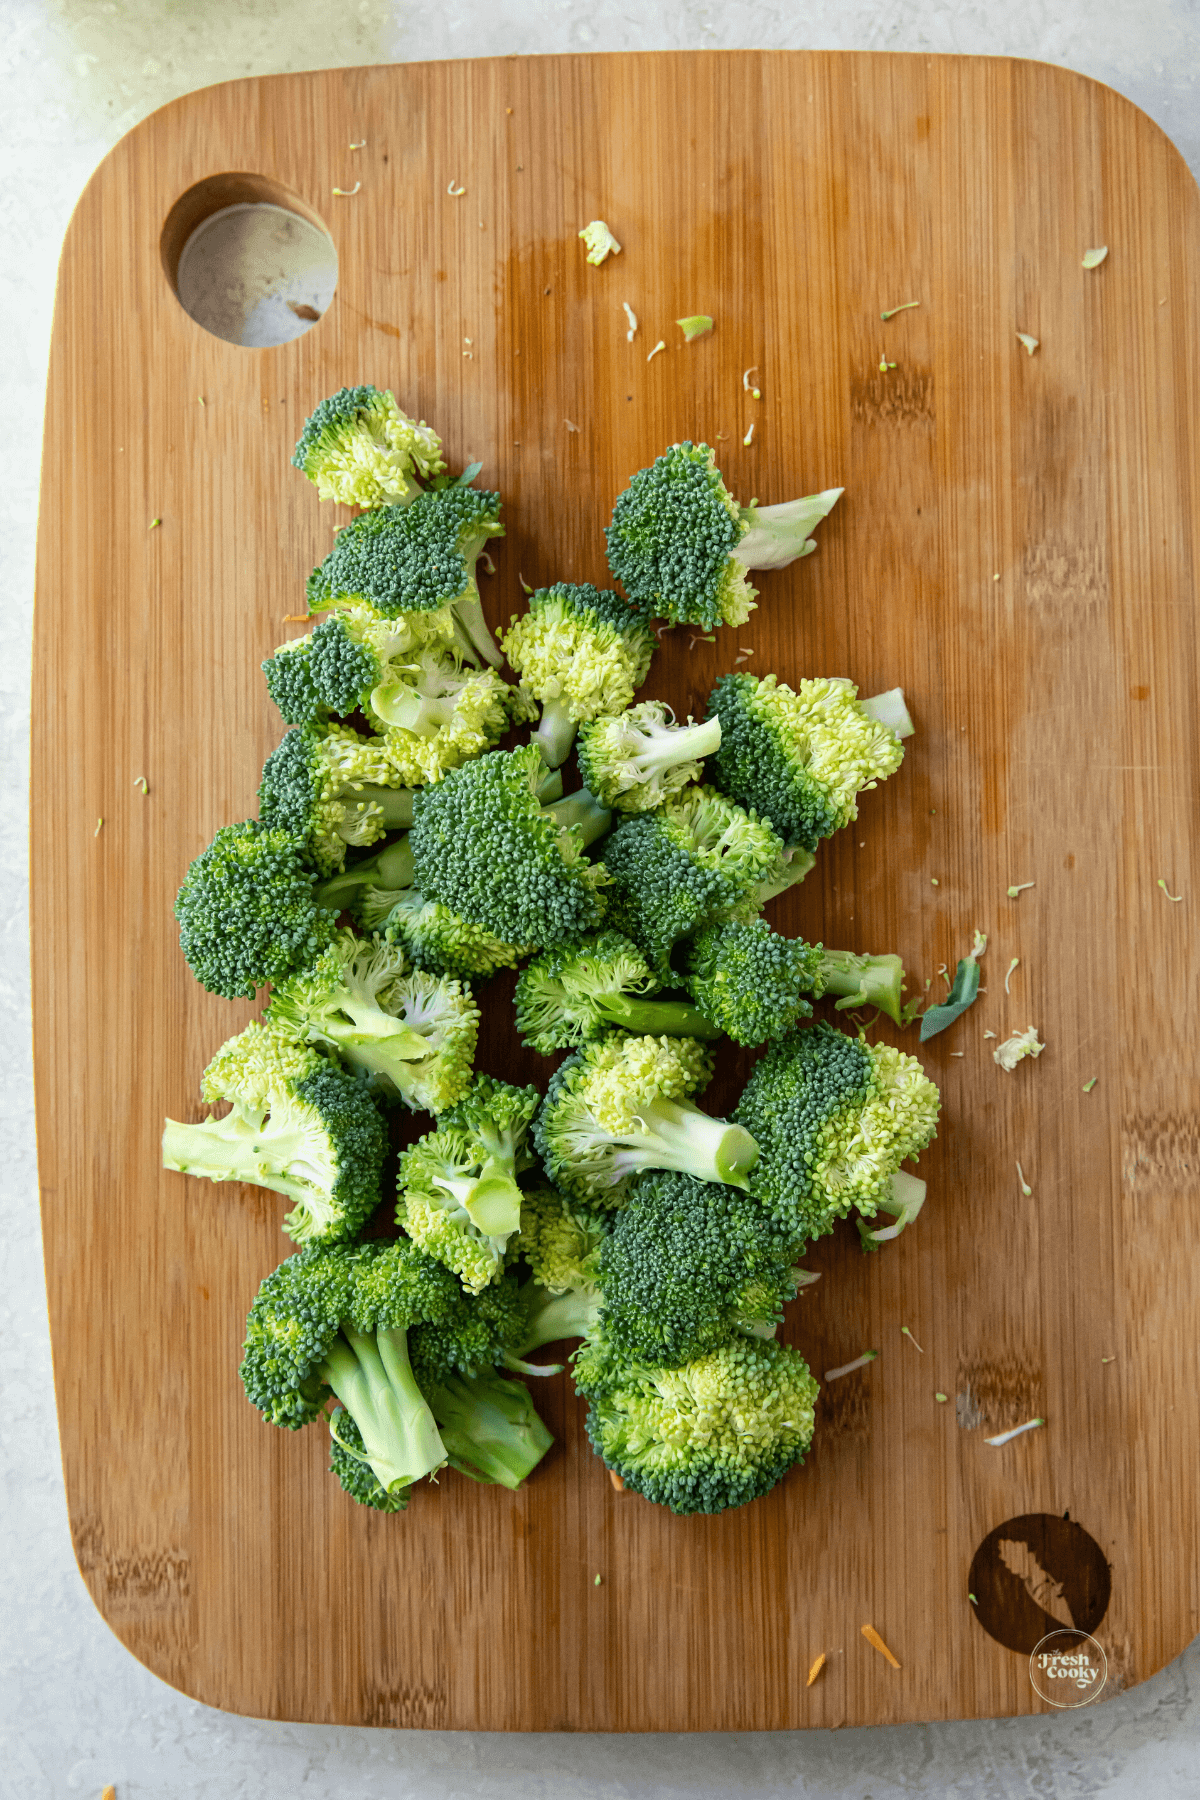 Broccoli florets cut on cutting board.